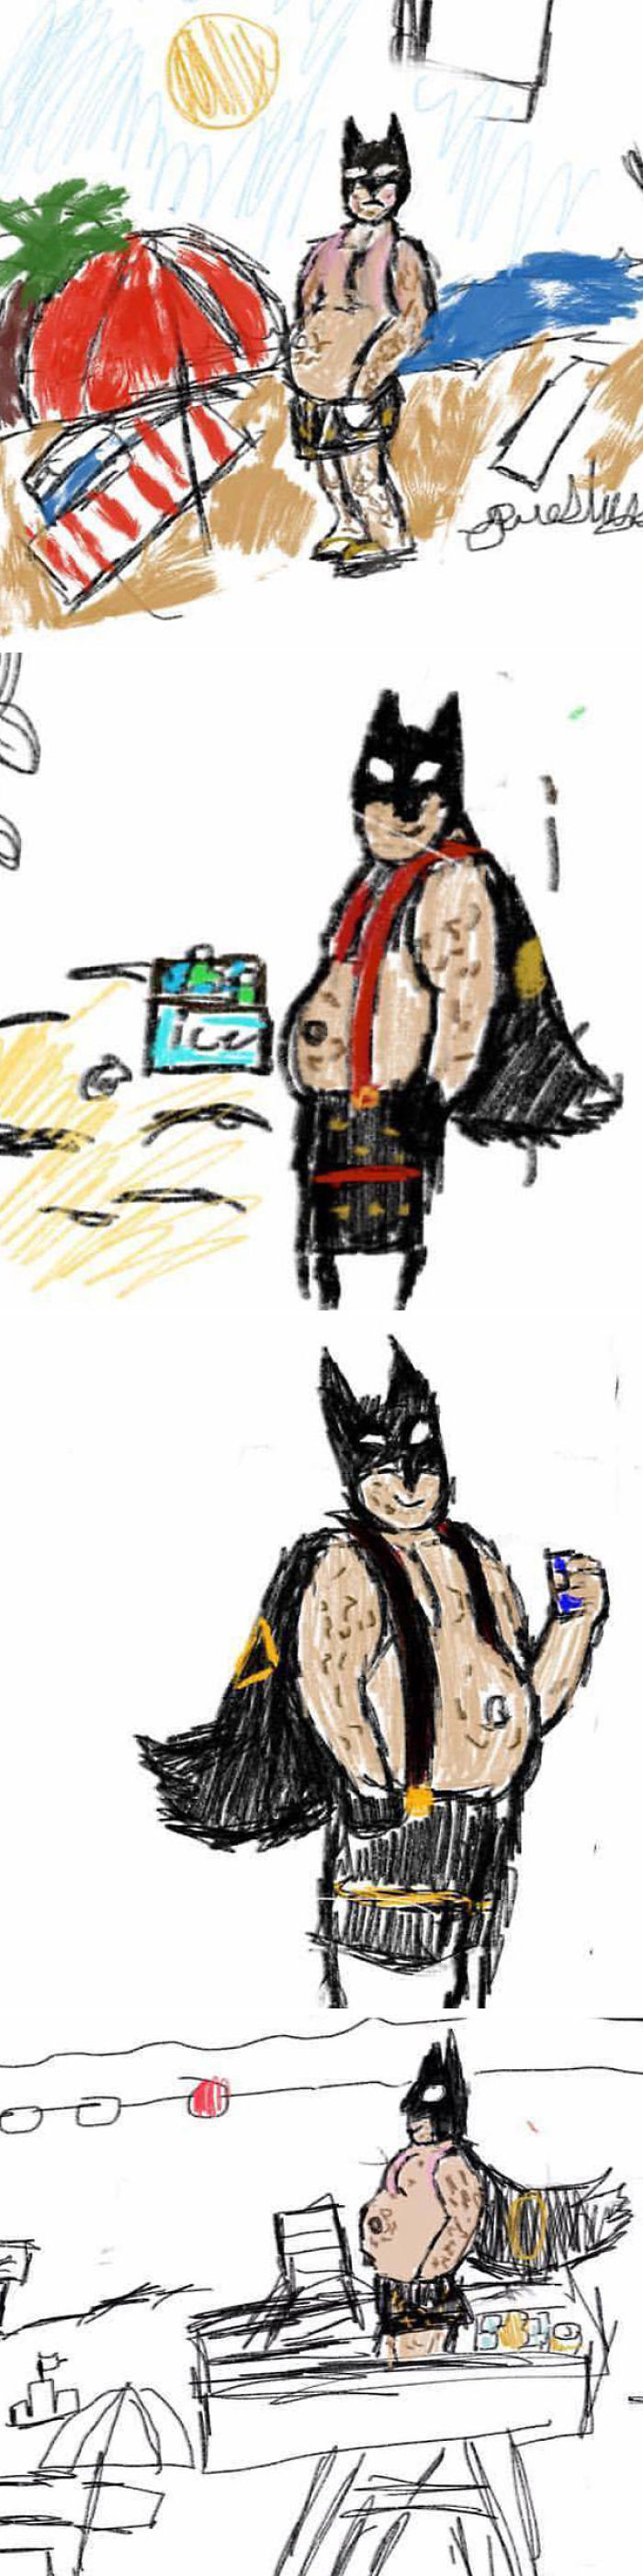 Mi hija de 11 años ha empezado a dibujar a Batman gordo y de mediana edad en la playa